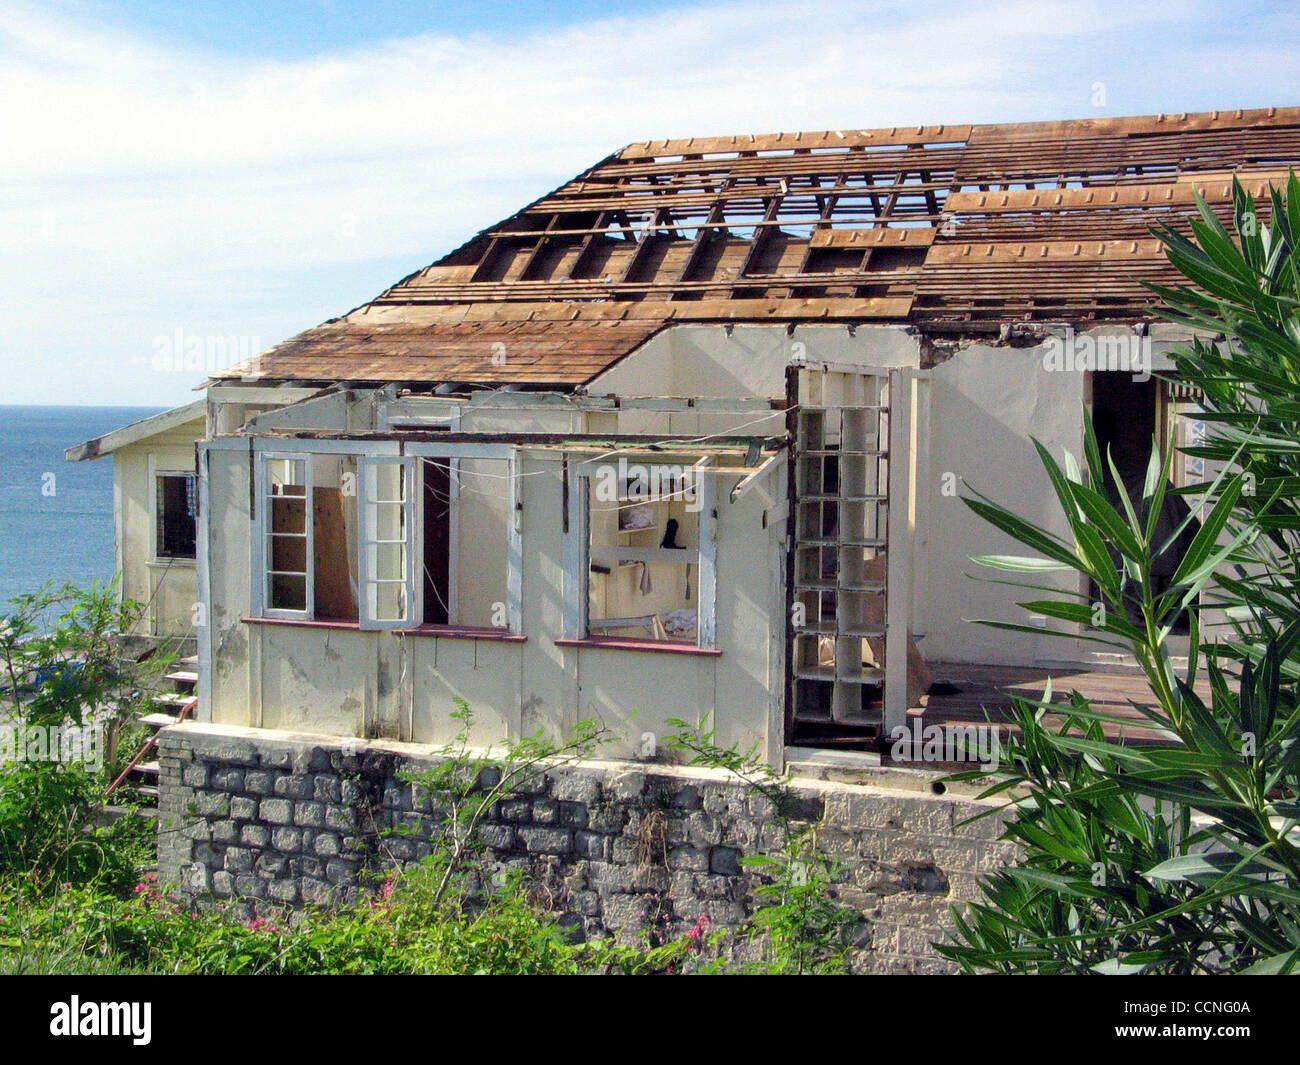 George's, Granada -- Muchas casas de la isla este aspecto, despojada de techos y paredes por el huracán Iván. Fotografía por Cheryl Blaccurby Foto de stock